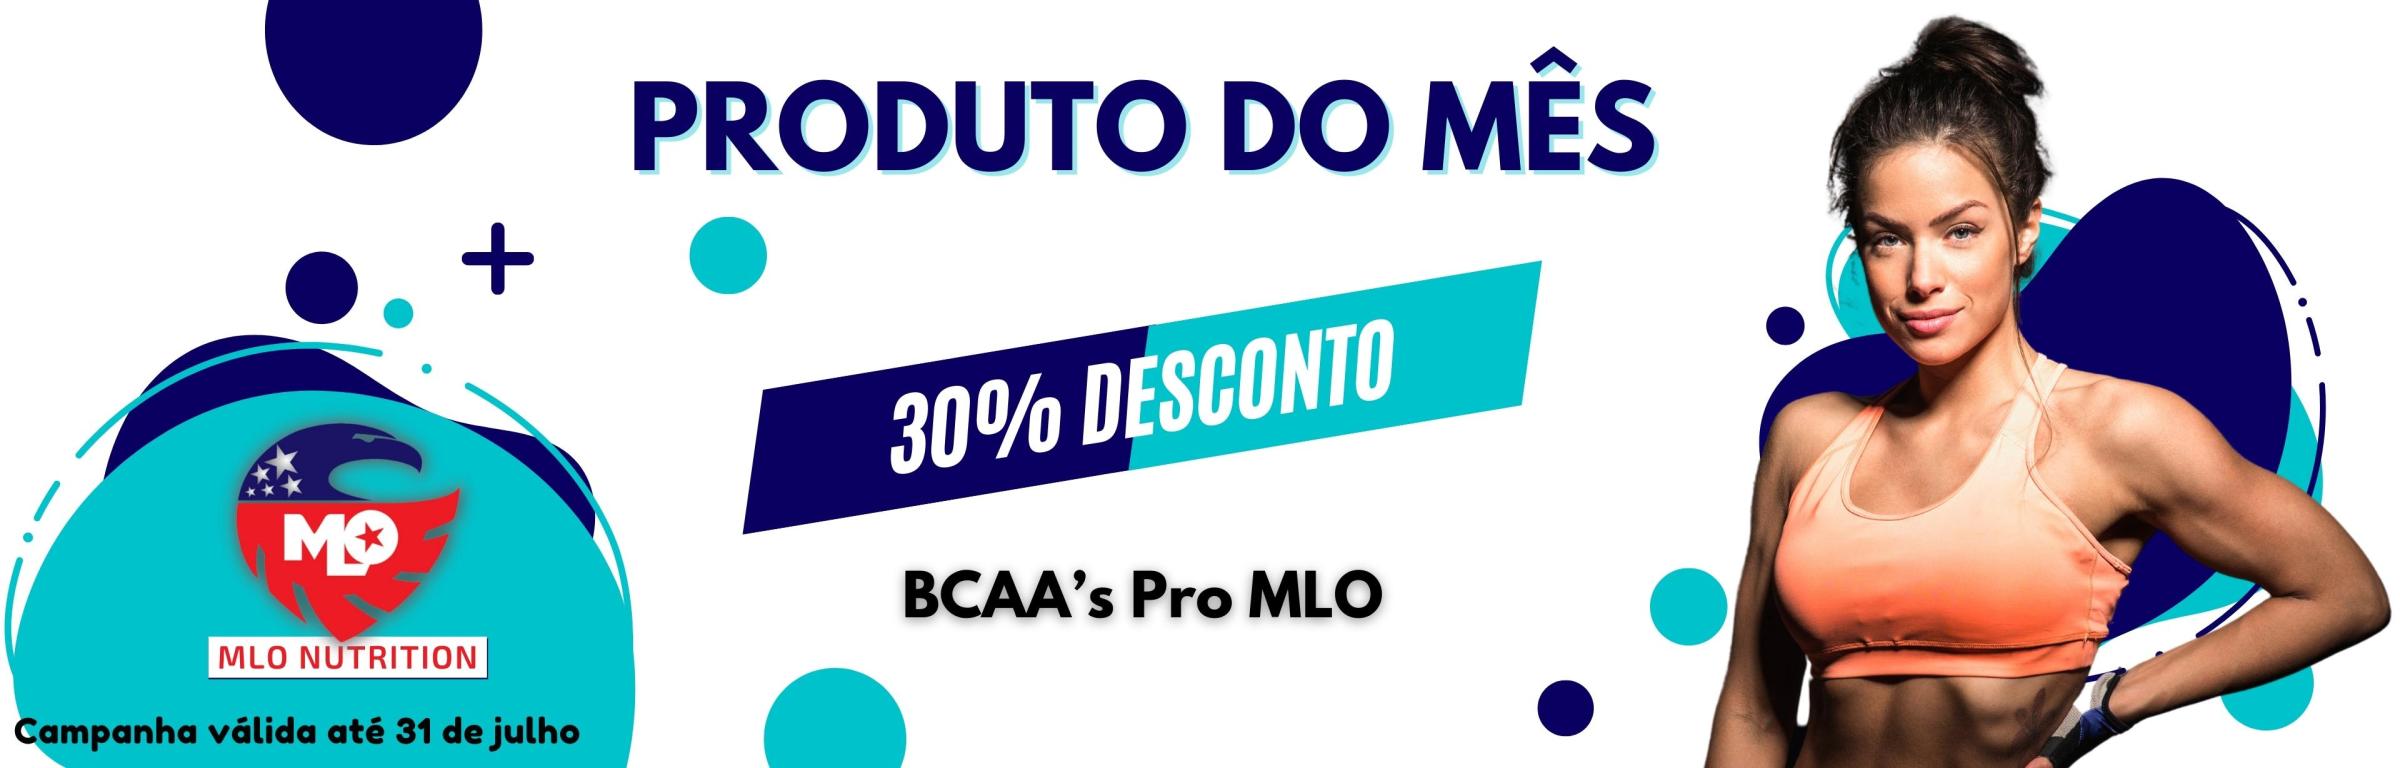 Produto do mês : BCAA’S pro ( MLO ) 30% desconto - Produto do mês julho 2022 : BCAA’S pro ( MLO ) com 30% desconto